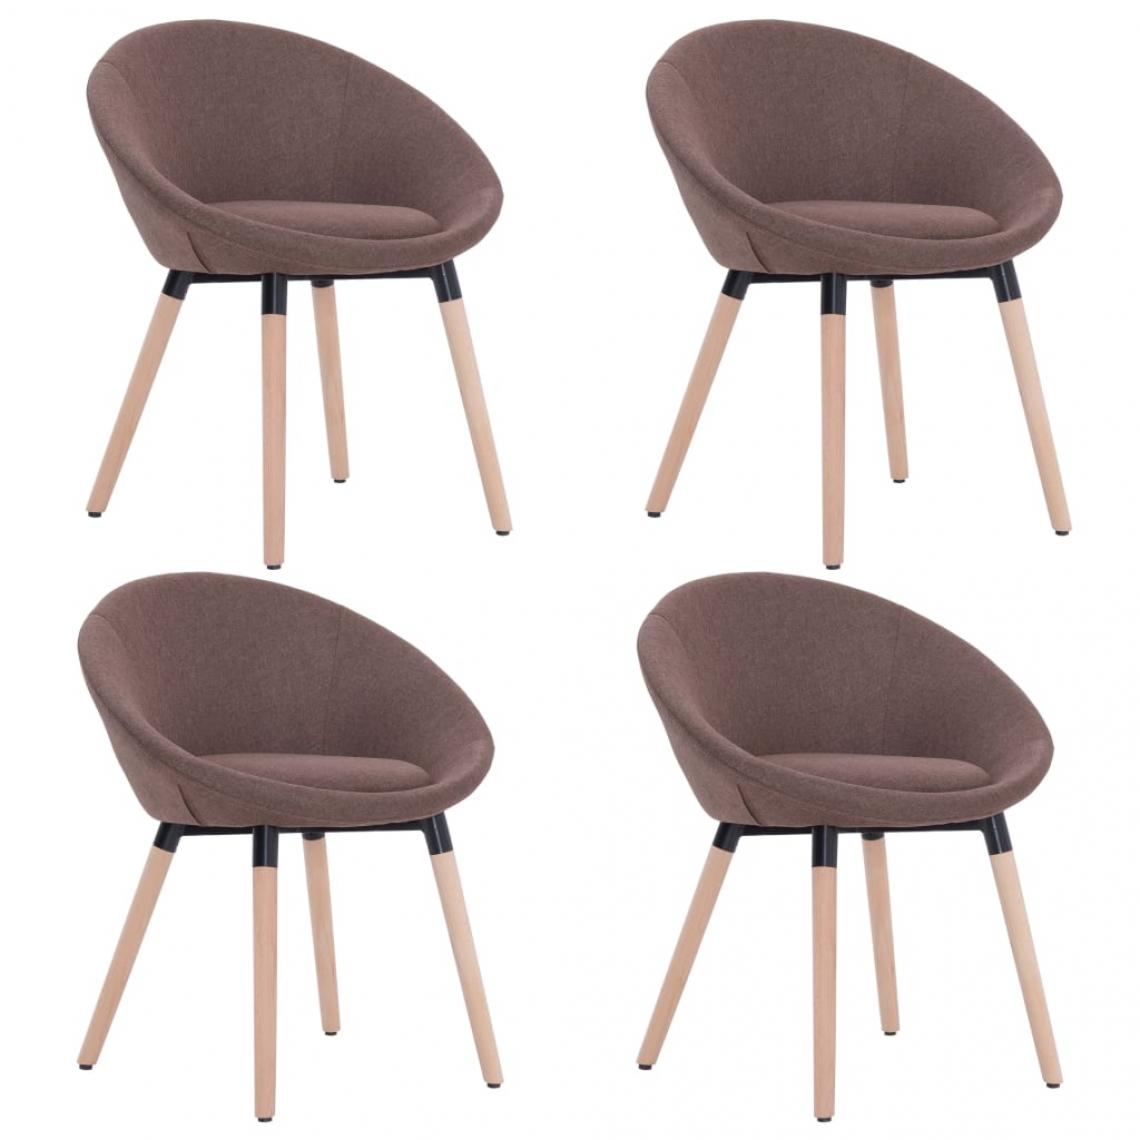 Decoshop26 - Lot de 4 chaises de salle à manger cuisine design contemporain tissu marron CDS021735 - Chaises